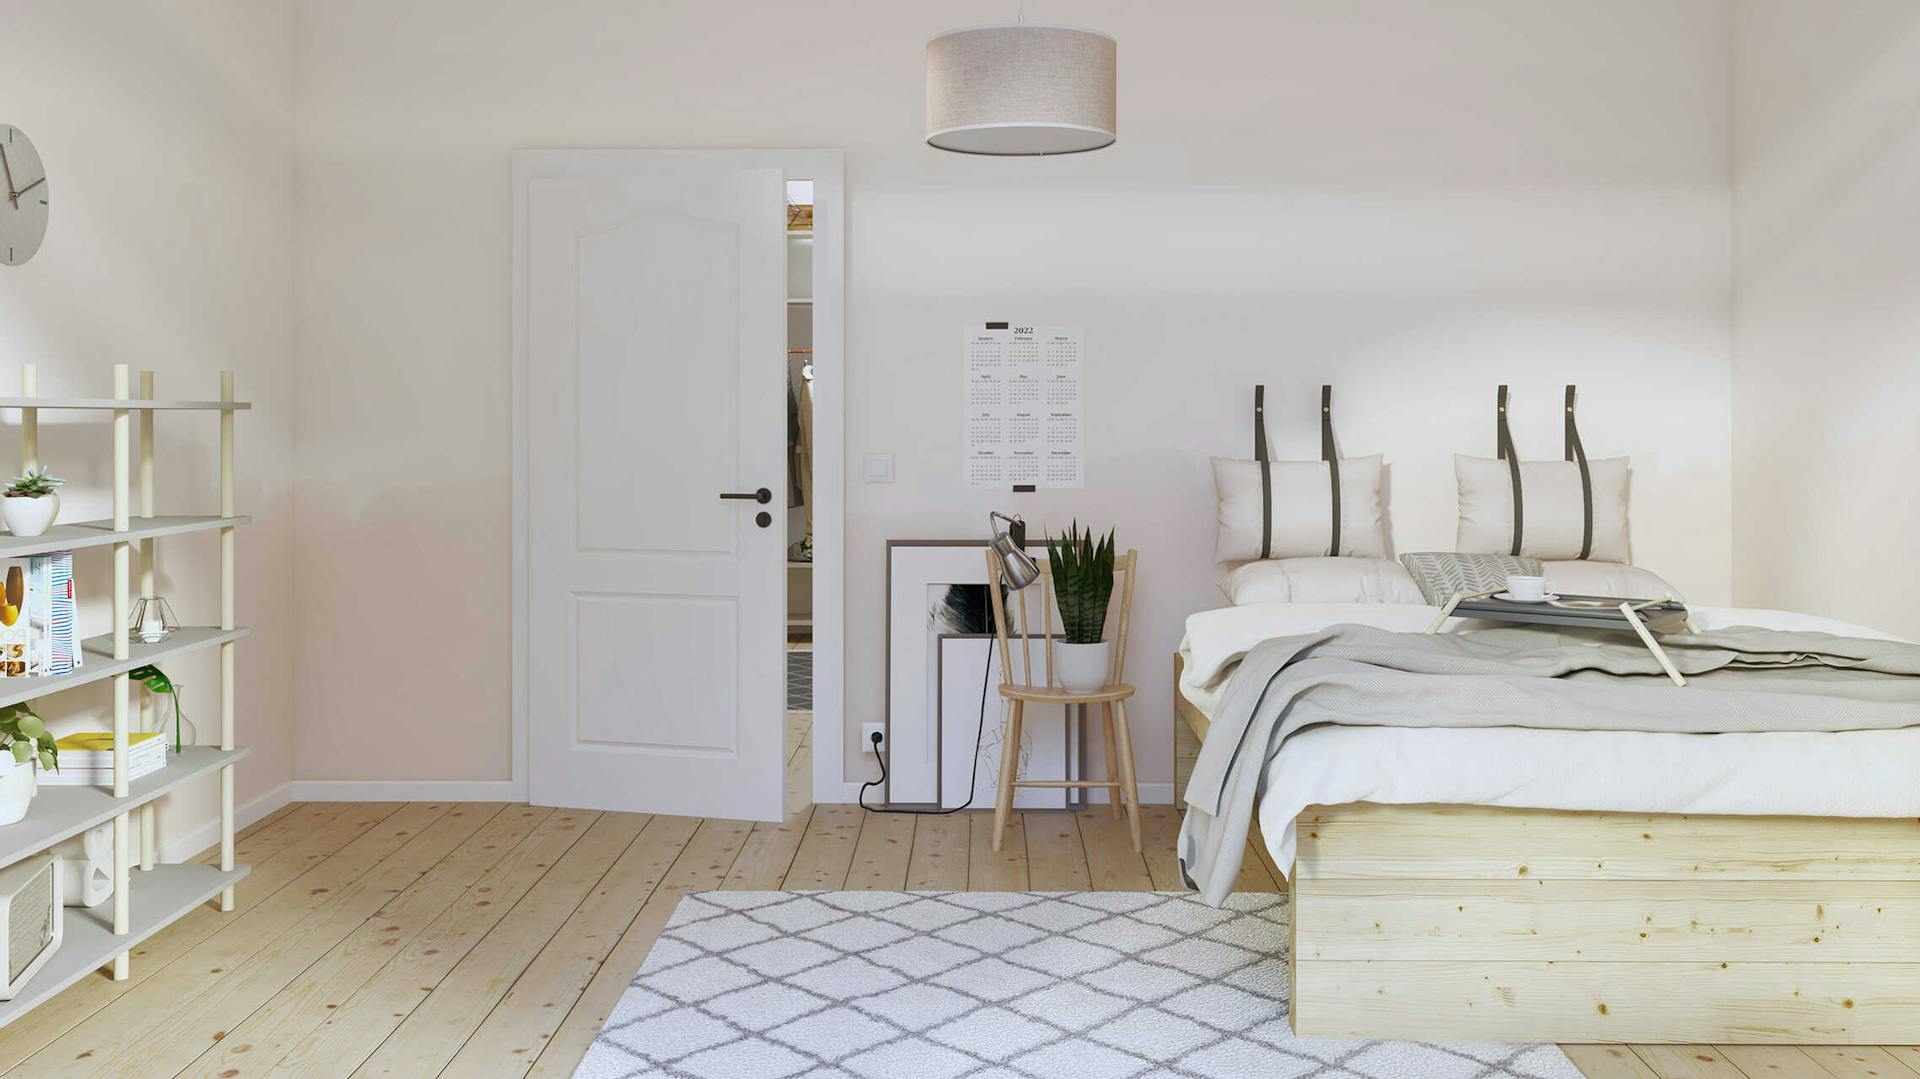 : Ein Schlafzimmer mit beigen Wänden und einer Einrichtung in hellem Holz.